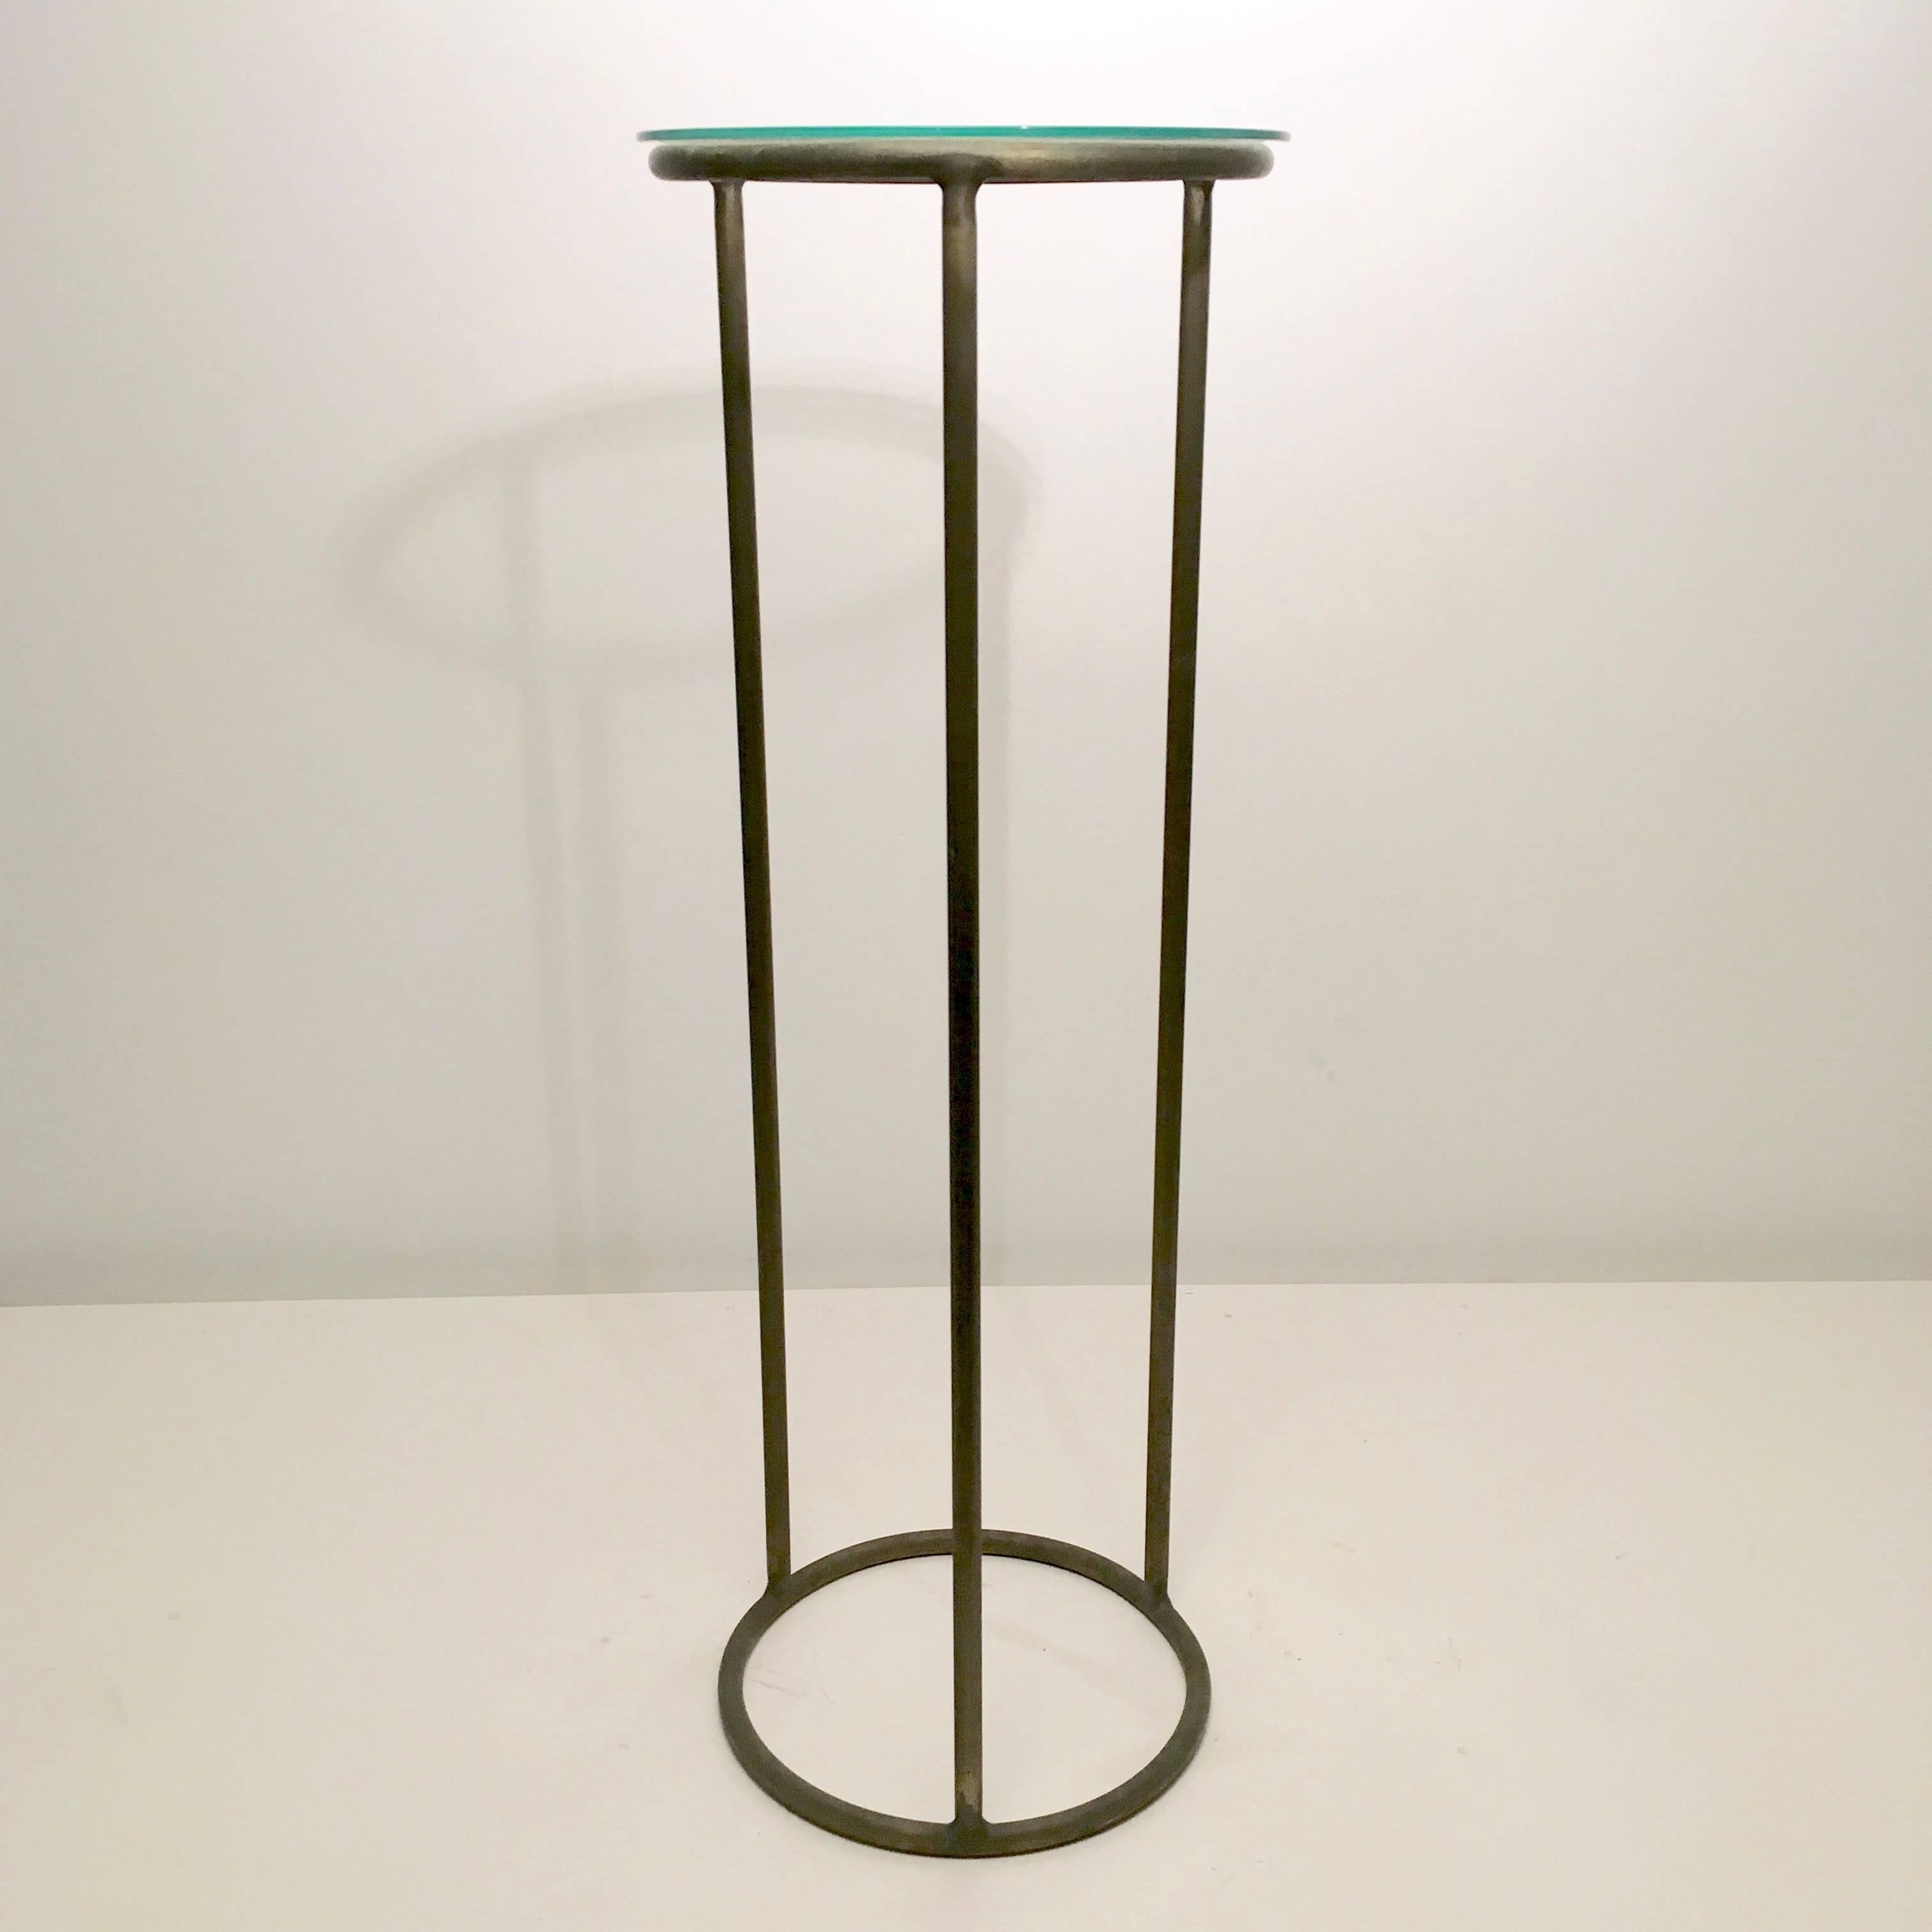 Rare Walter Lamb bronze pedestals.
6500-Tall.
5000-Short.